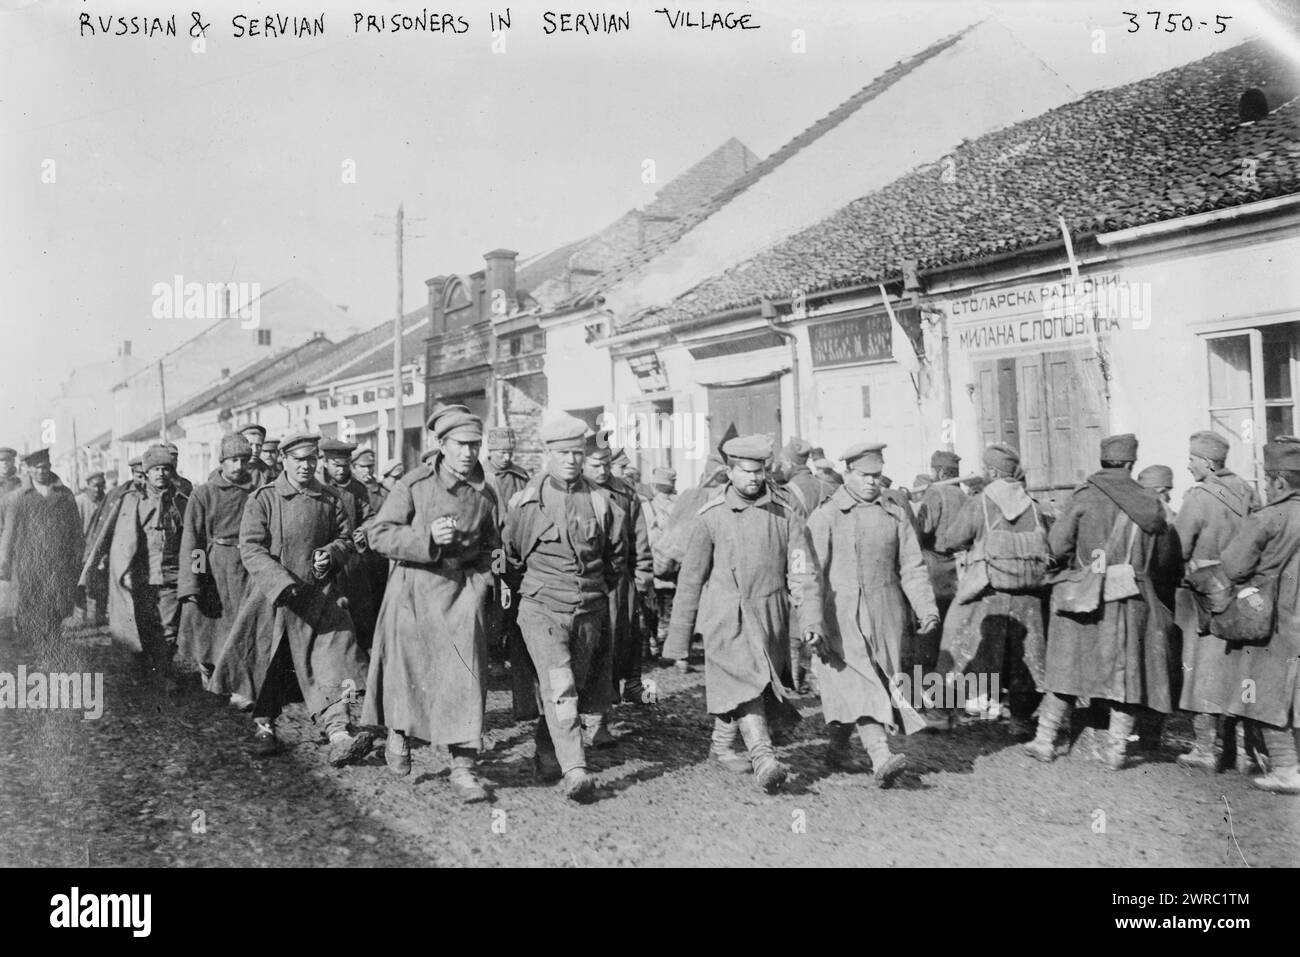 Russe et servien, c'est-à-dire, prisonniers serbes dans le village servien, photographie montre des prisonniers russes et serbes en Serbie pendant la première Guerre mondiale, entre env. 1915 et env. 1920, Guerre mondiale, 1914-1918, négatifs en verre, 1 négatif : verre Banque D'Images